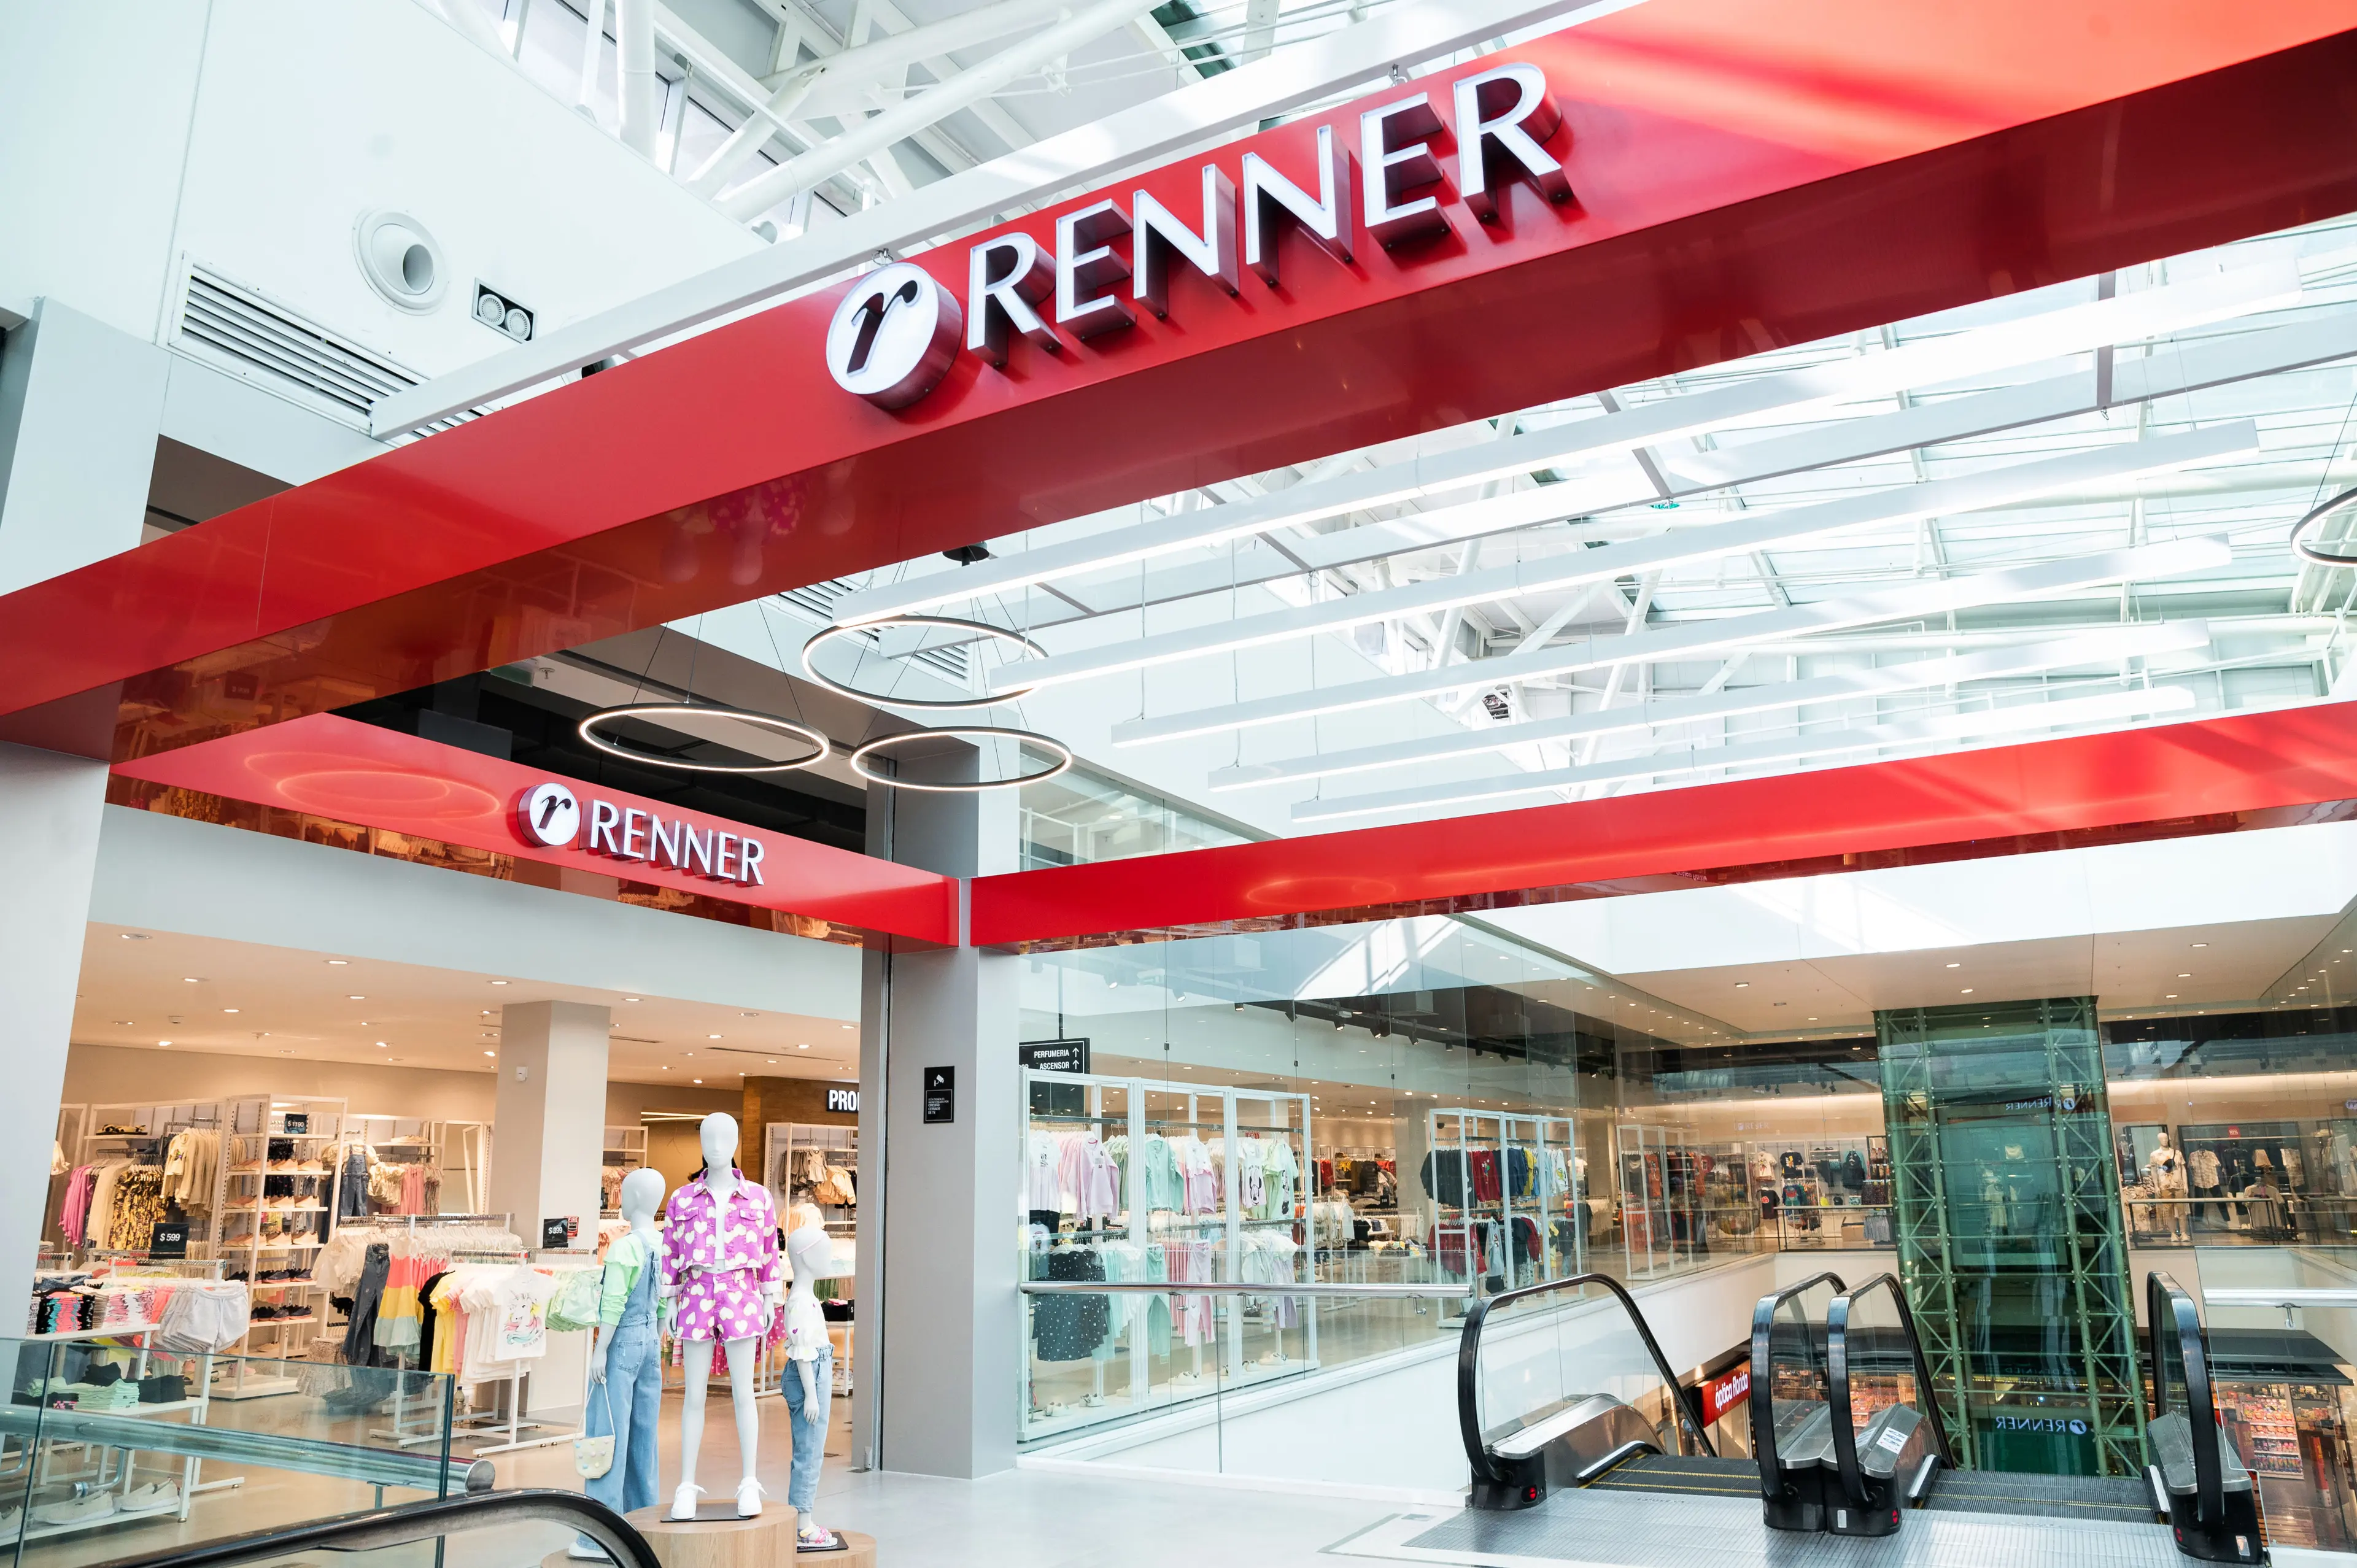 Imagen de la fachada de una tienda renner dentro de un centro comercial